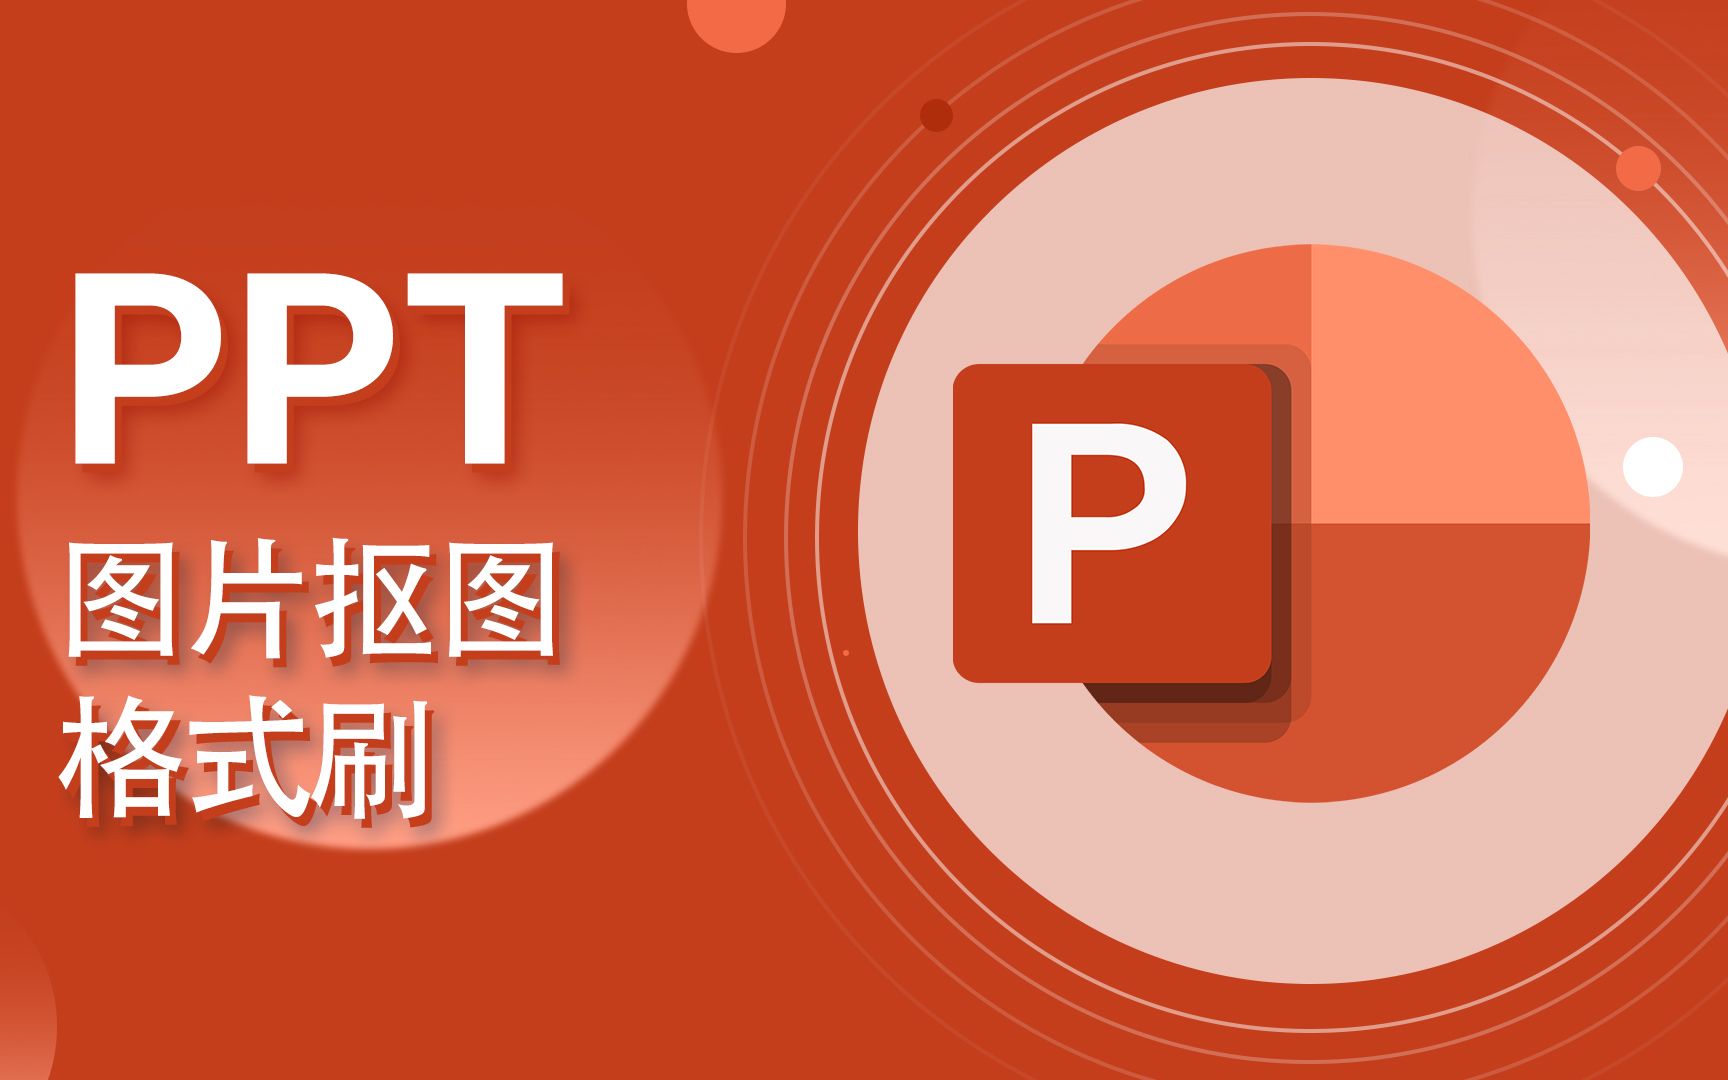 PPT教程-PowerPoint 删除图片背景、格式刷【爱来教程】